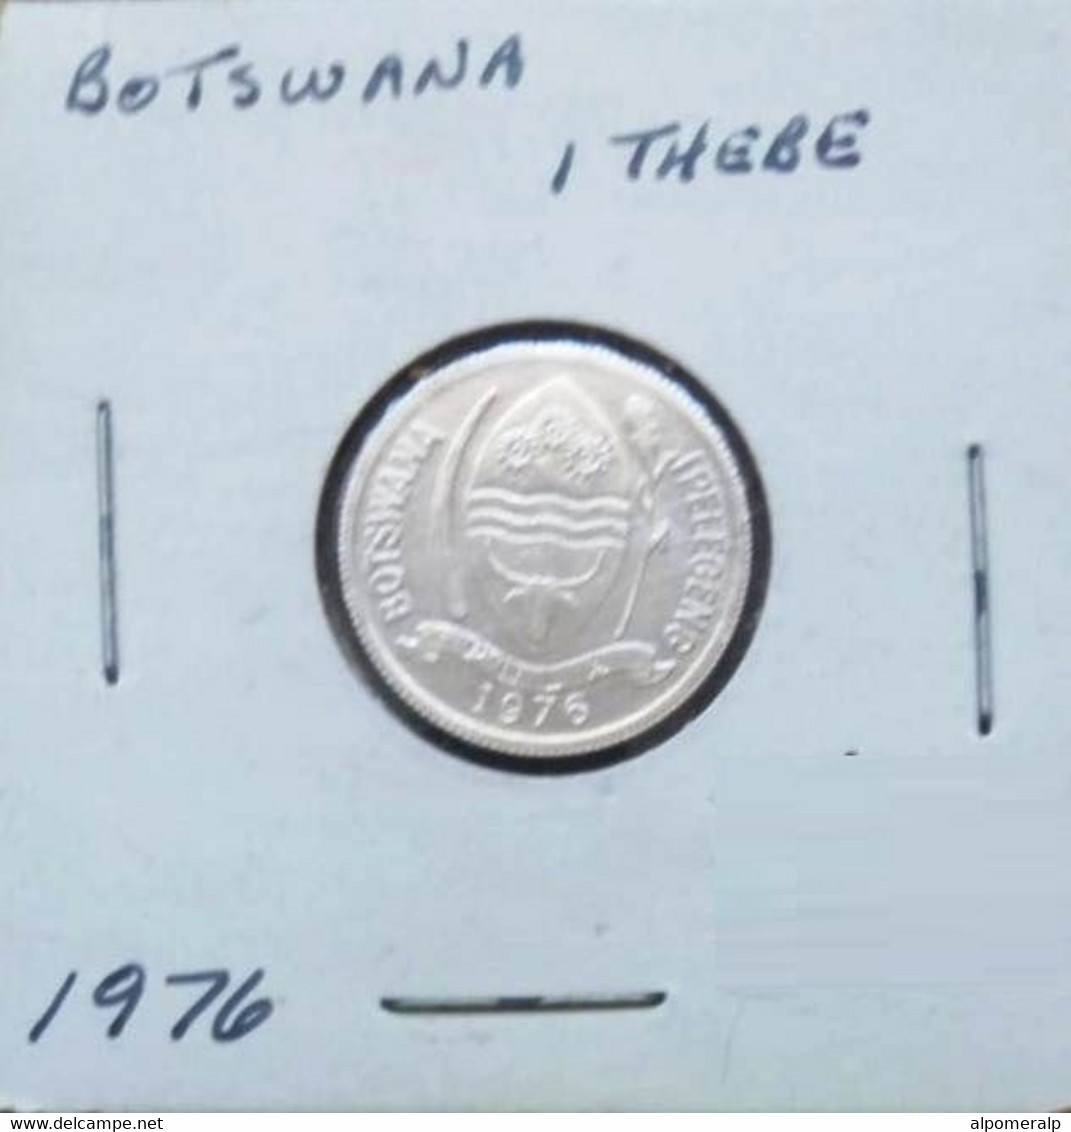 Botswana 1976 - 1 Thebe - Botswana